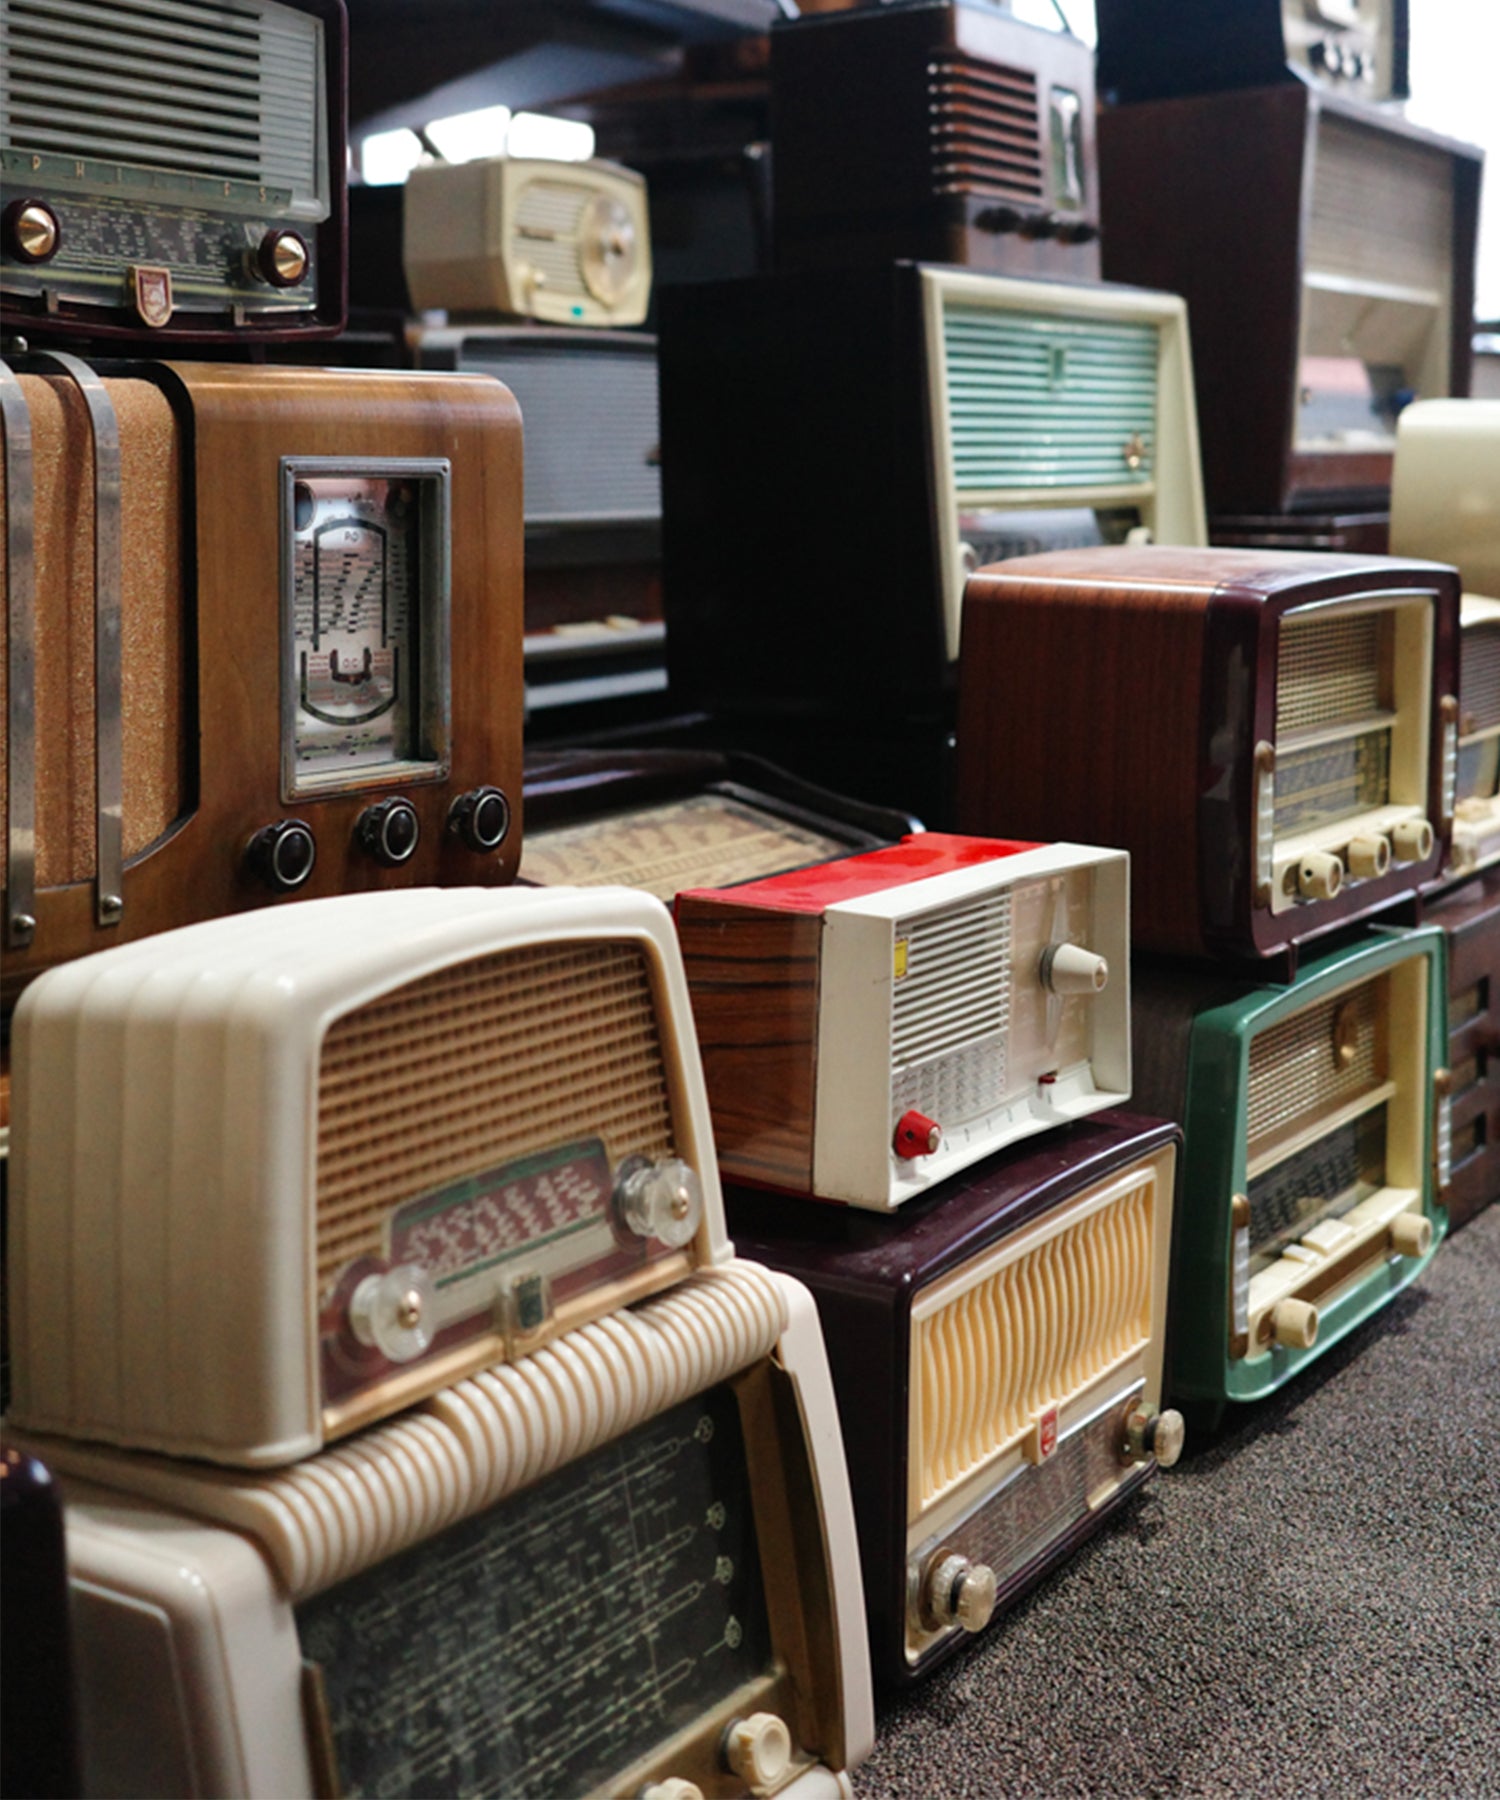 Collection de radios vintage par Focal, design rétro varié, haute qualité sonore, parfaites pour la décoration intérieure.